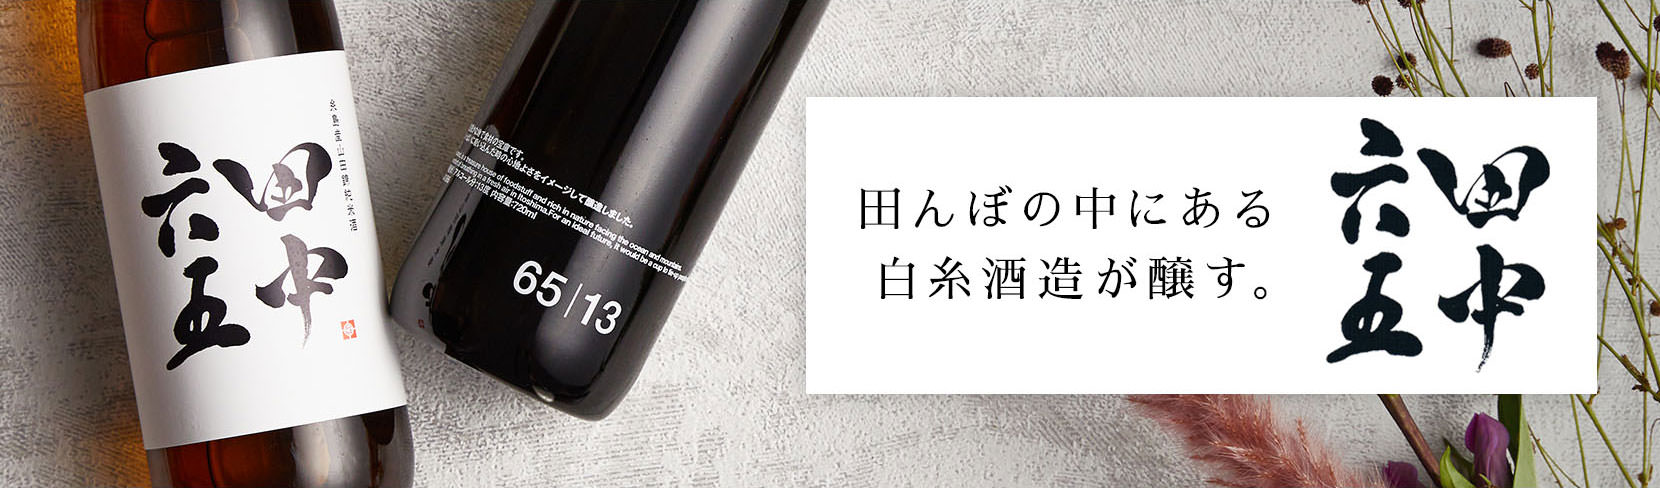 田中六五 三重の酒屋 酒乃店もりしたが取り扱う 白糸酒造の日本酒